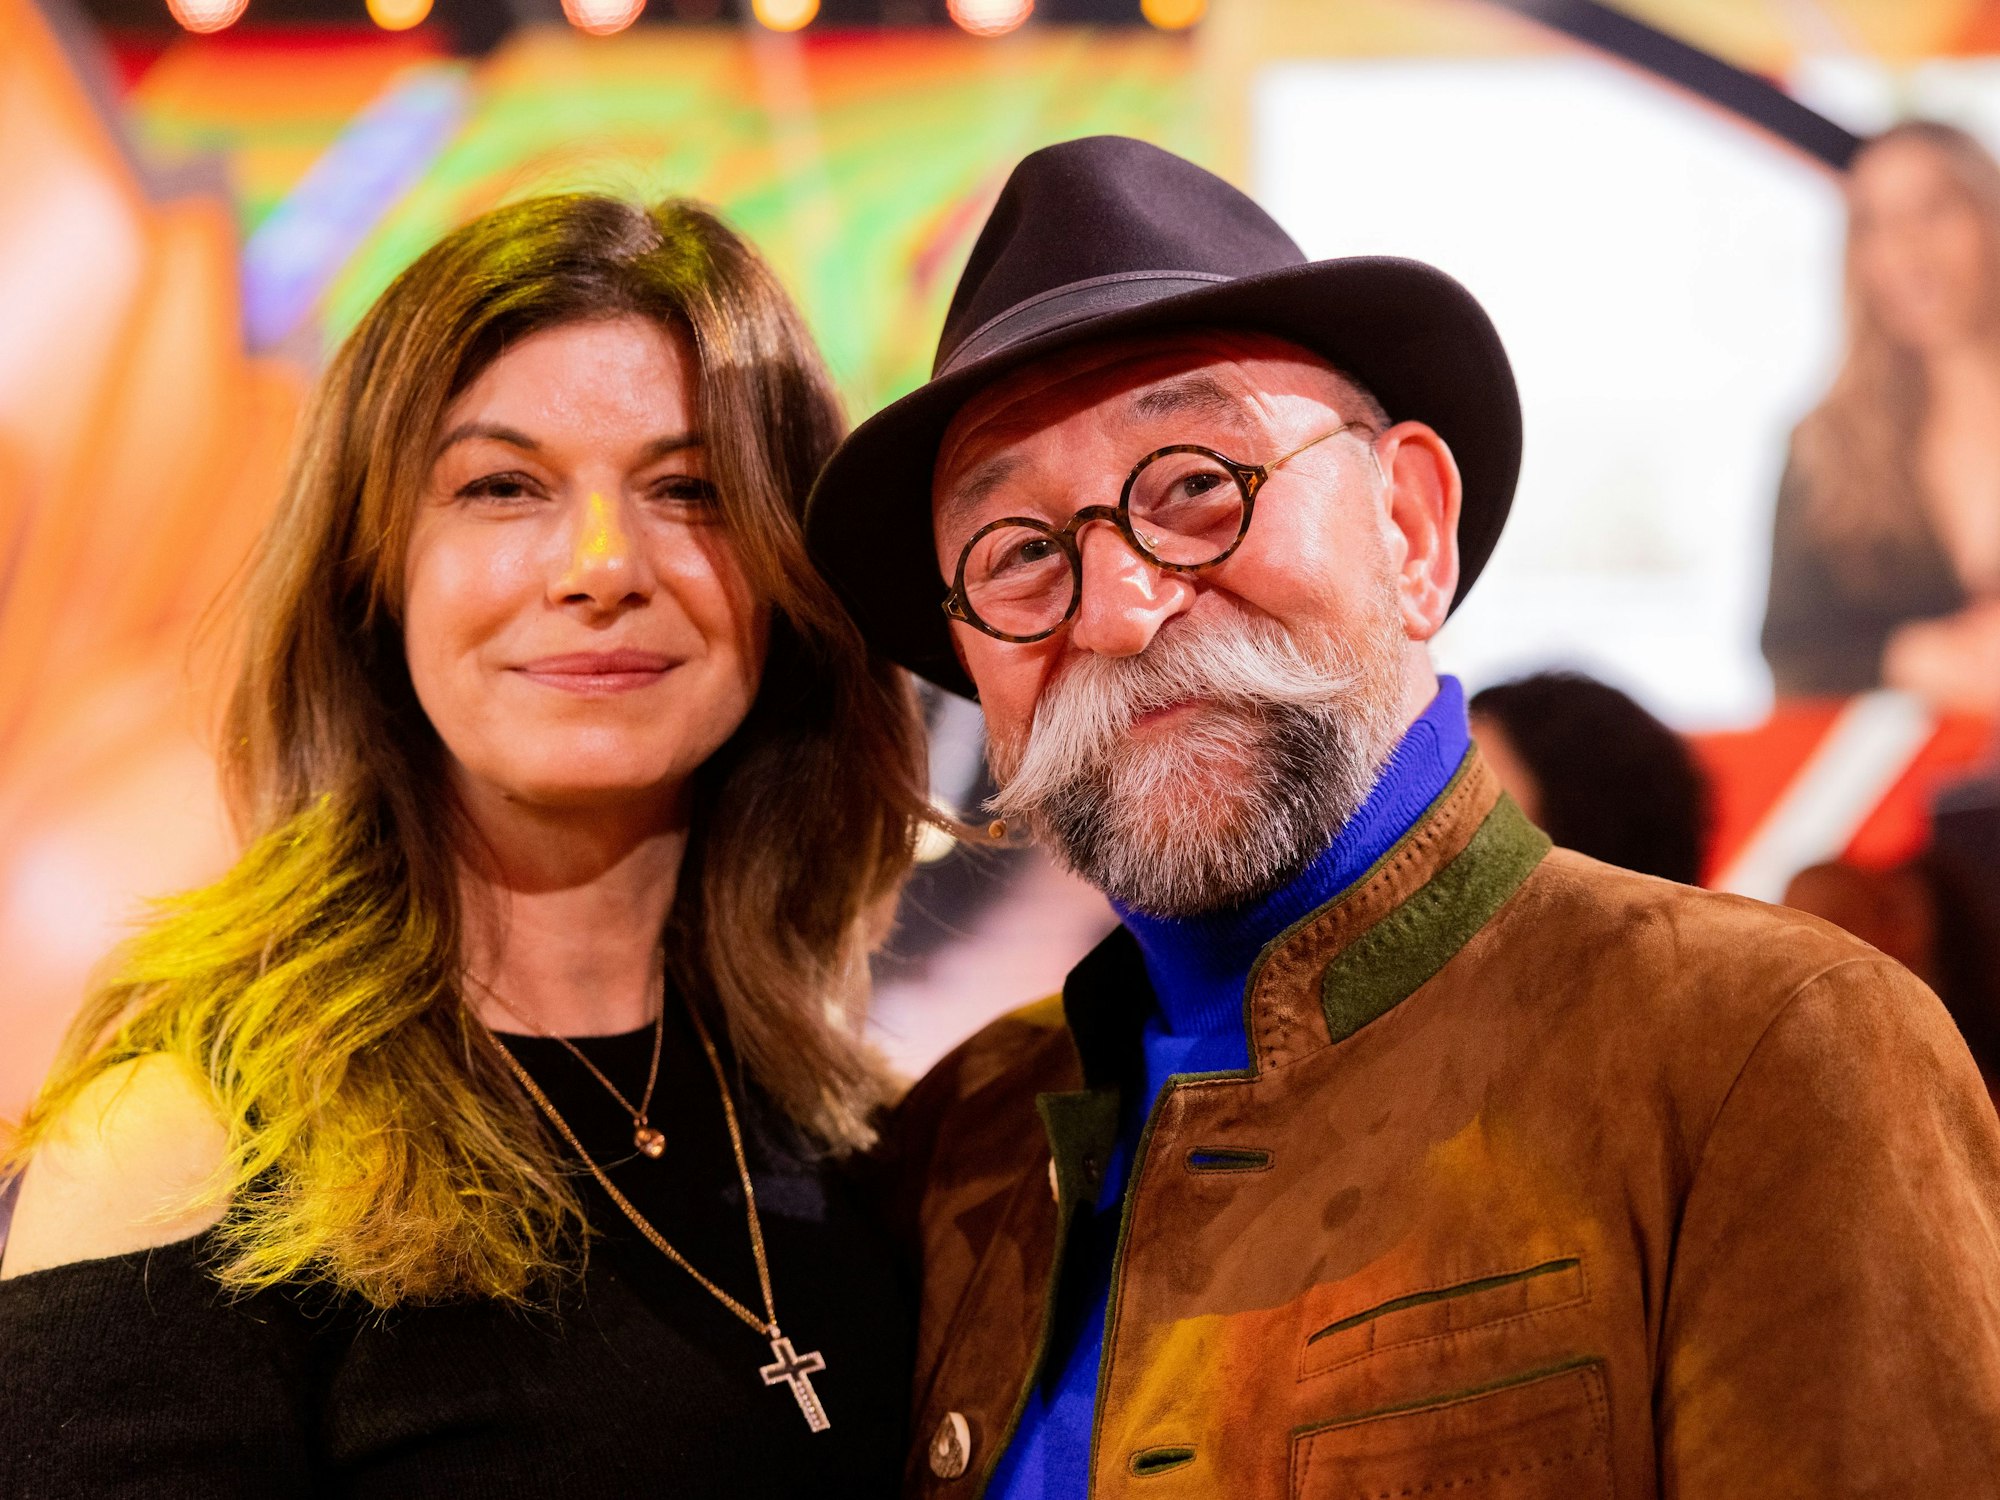 Horst Lichter, Fernsehkoch und Autor, und seine Frau Nada Lichter stehen in der RTL-Tanzshow "Let's Dance" im Coloneum auf dem Parkett.